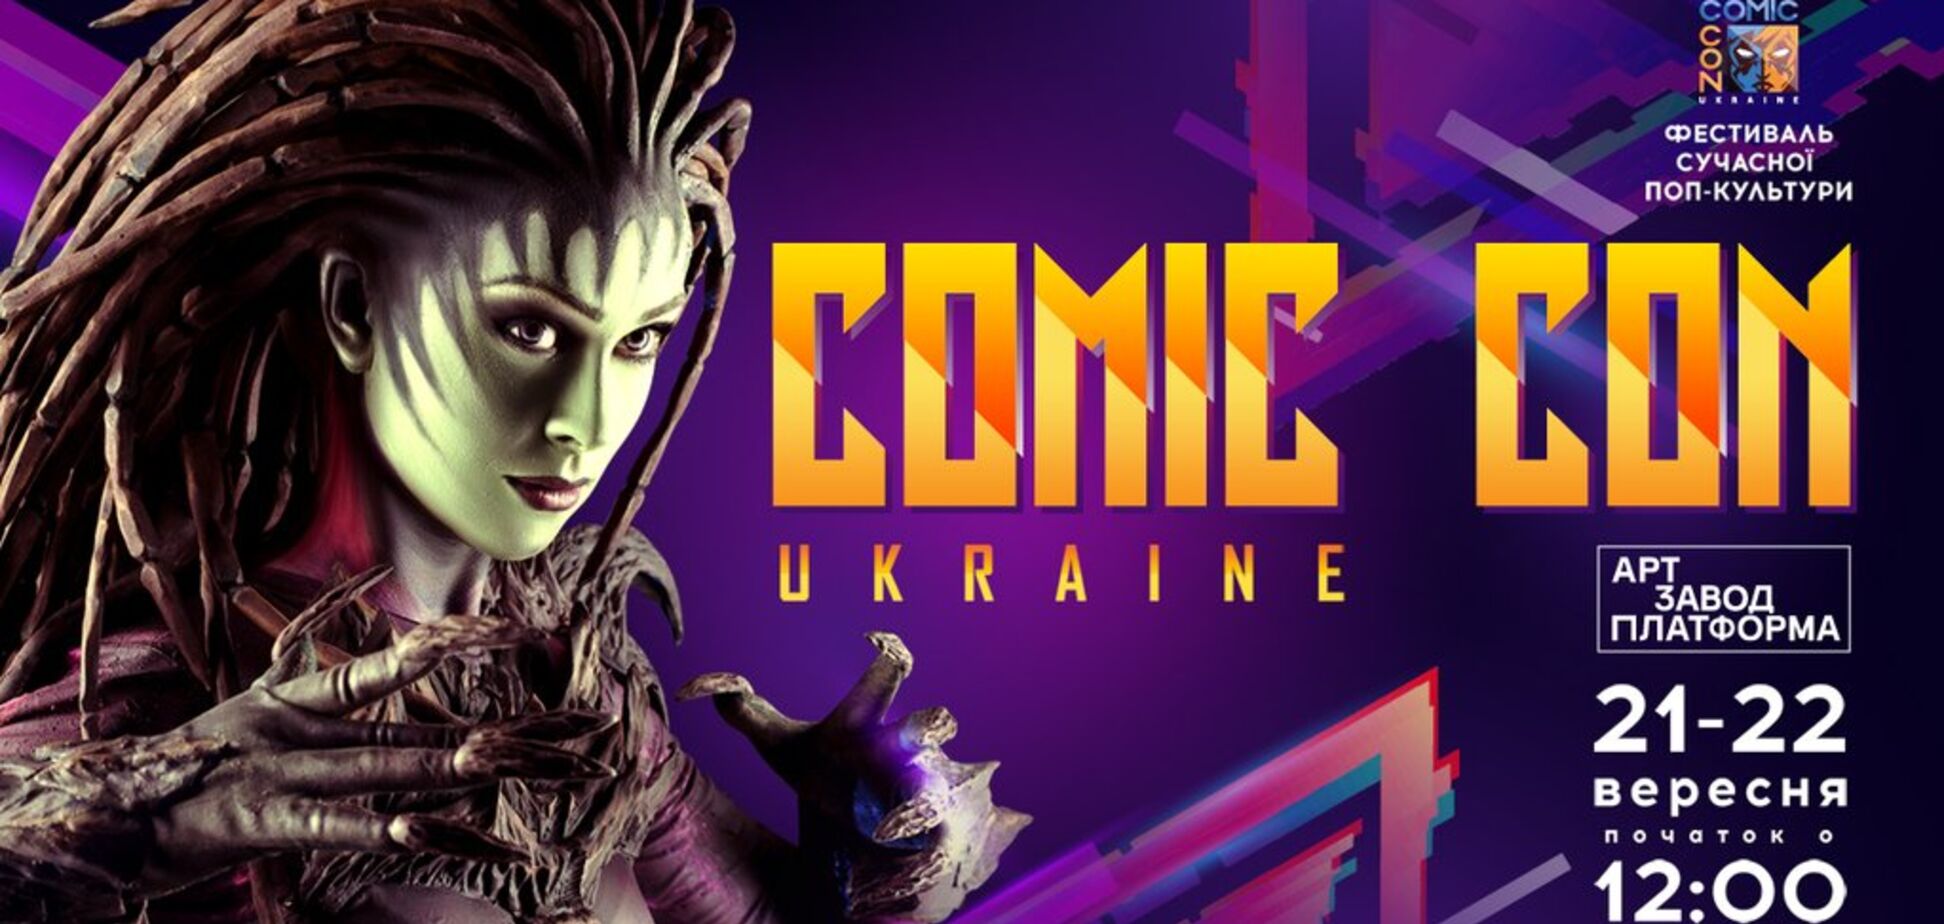 Comic Con Ukraine: 10 причин посетить конвент современной поп-культуры